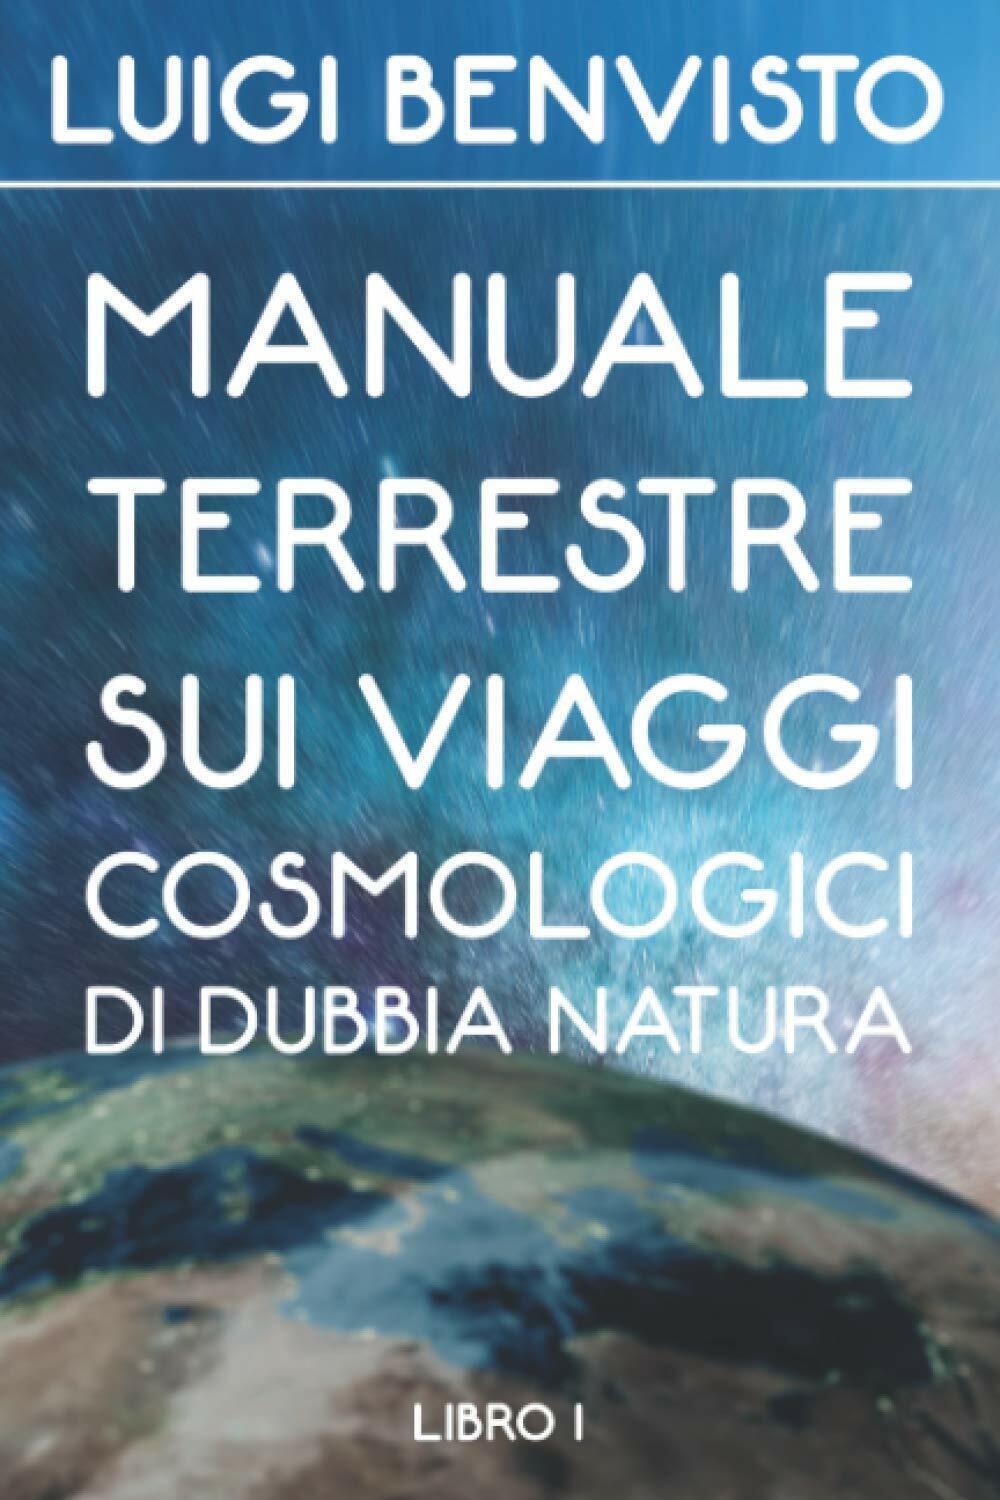 Manuale Terrestre sui viaggi cosmologici di dubbia natura di Luigi Benvisto,  20